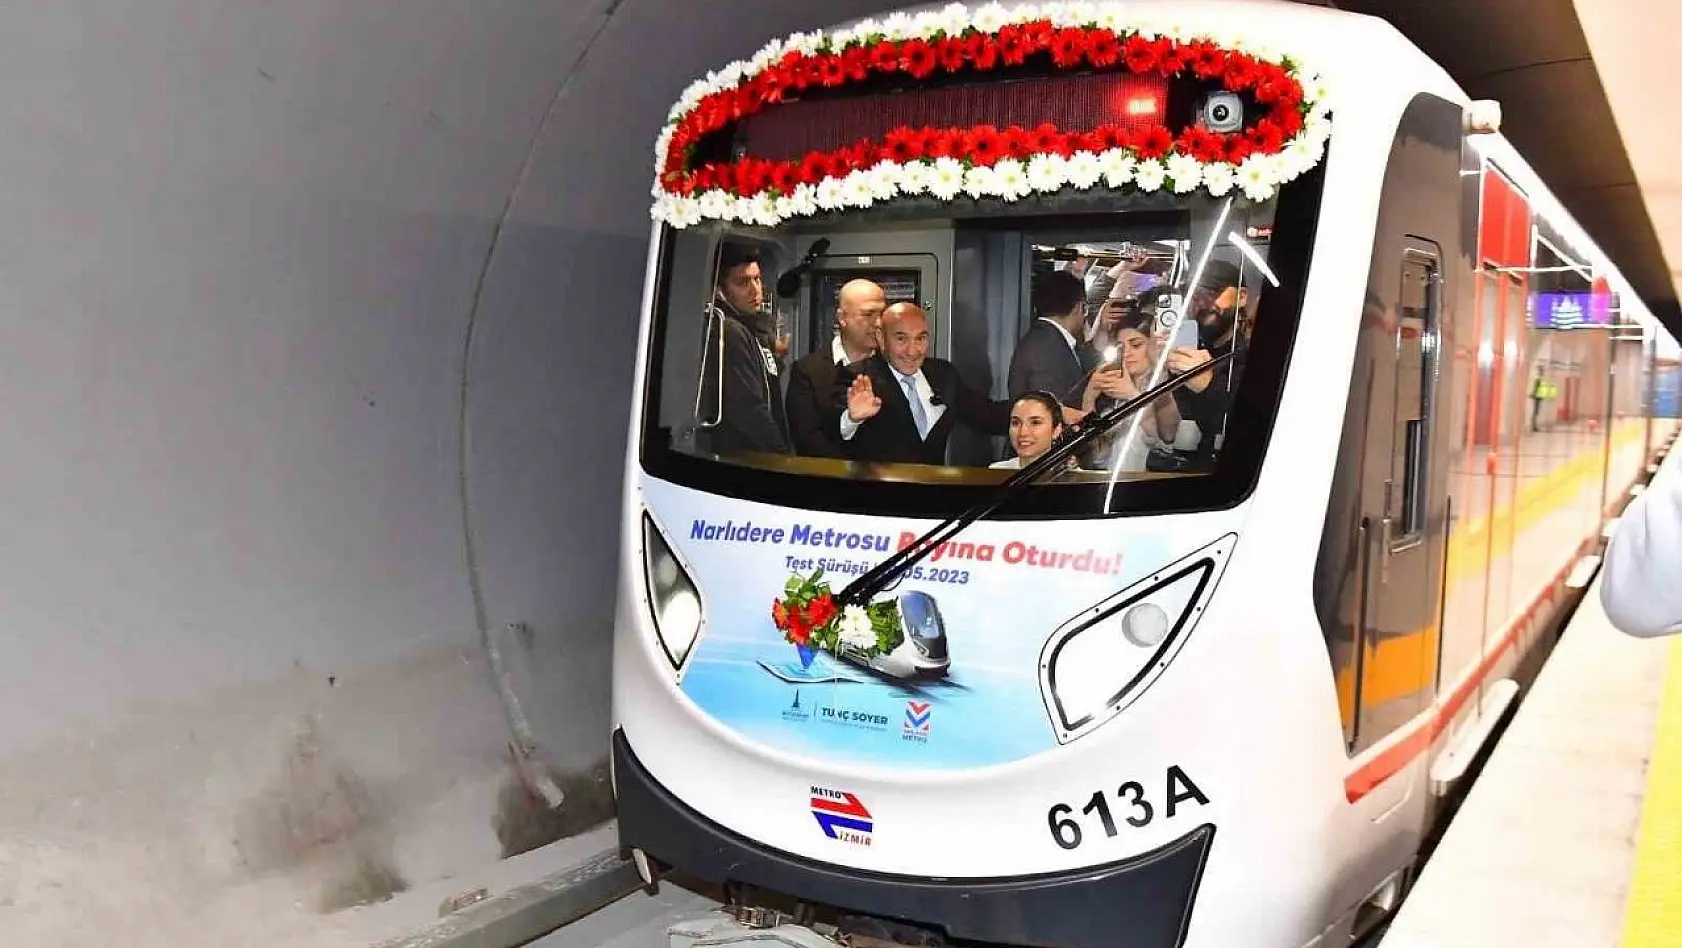 Narlıdere Metrosu 24 Şubat'ta açılıyor